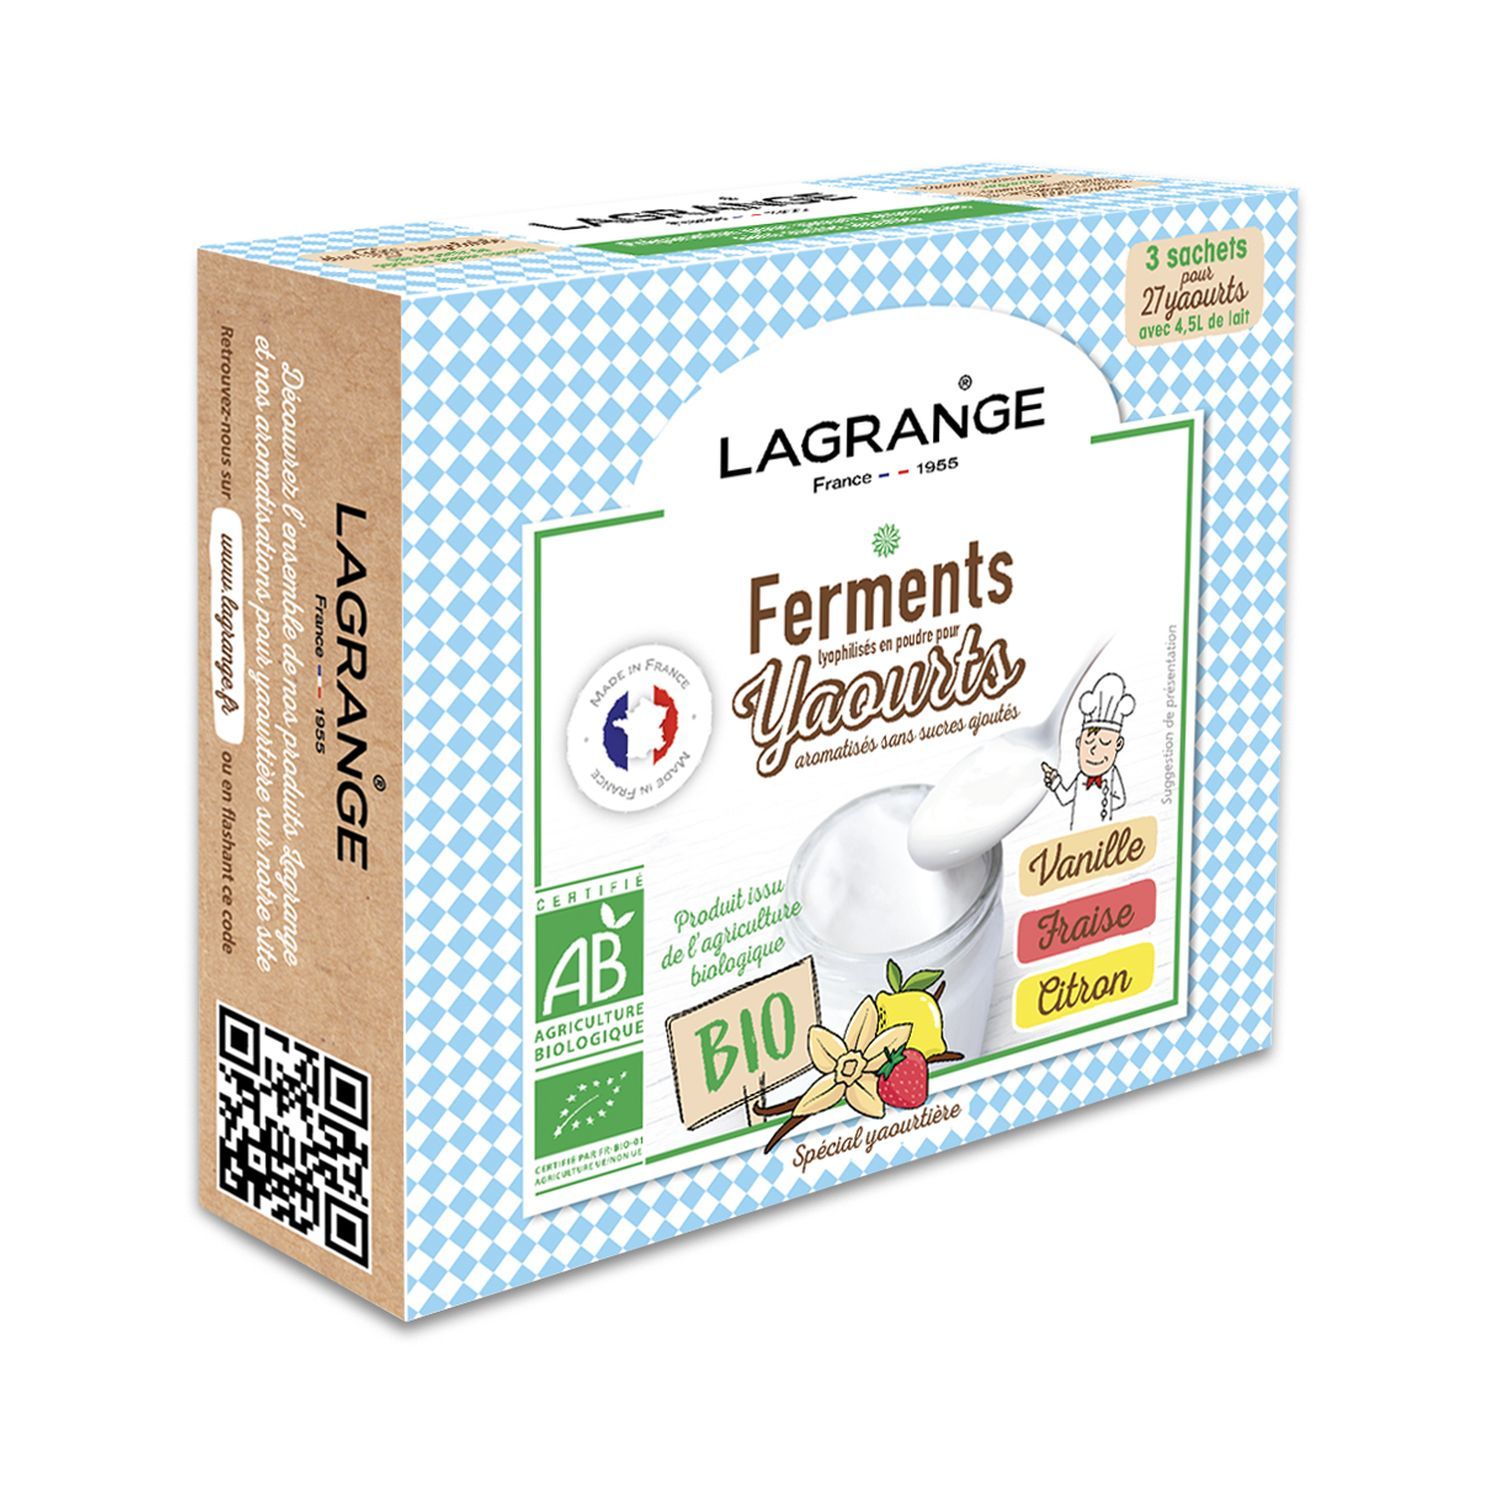 LAGRANGE Arôme pour yaourt parfum Framboise - 380370 pas cher 